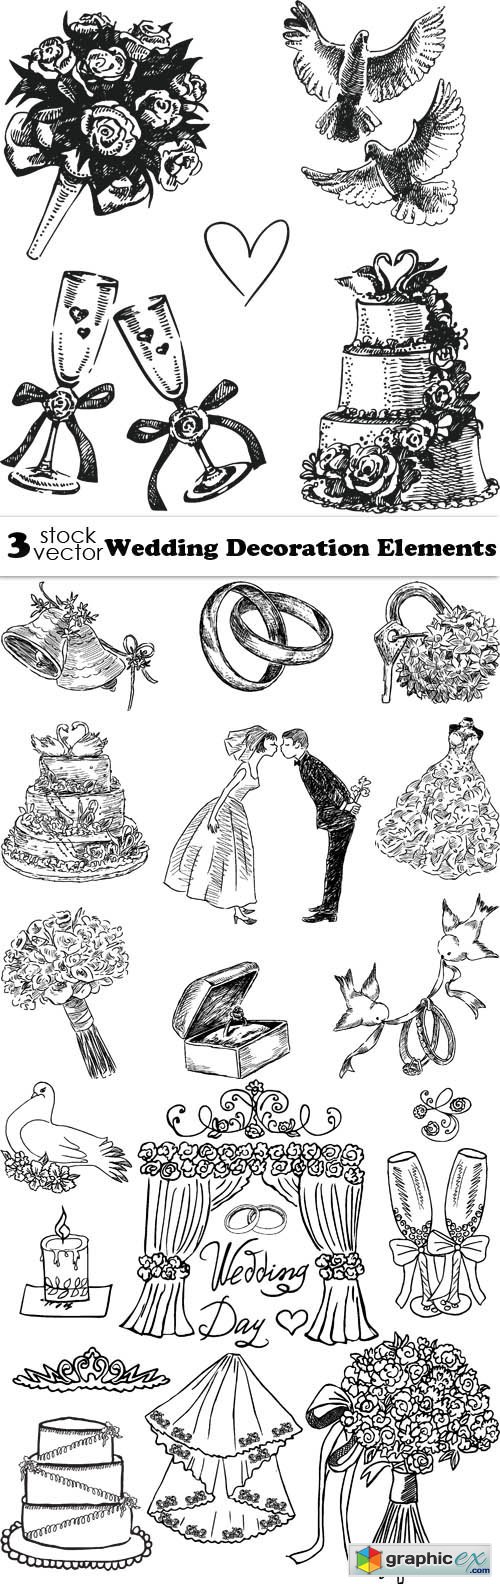 Vectors - Wedding Decoration Elements